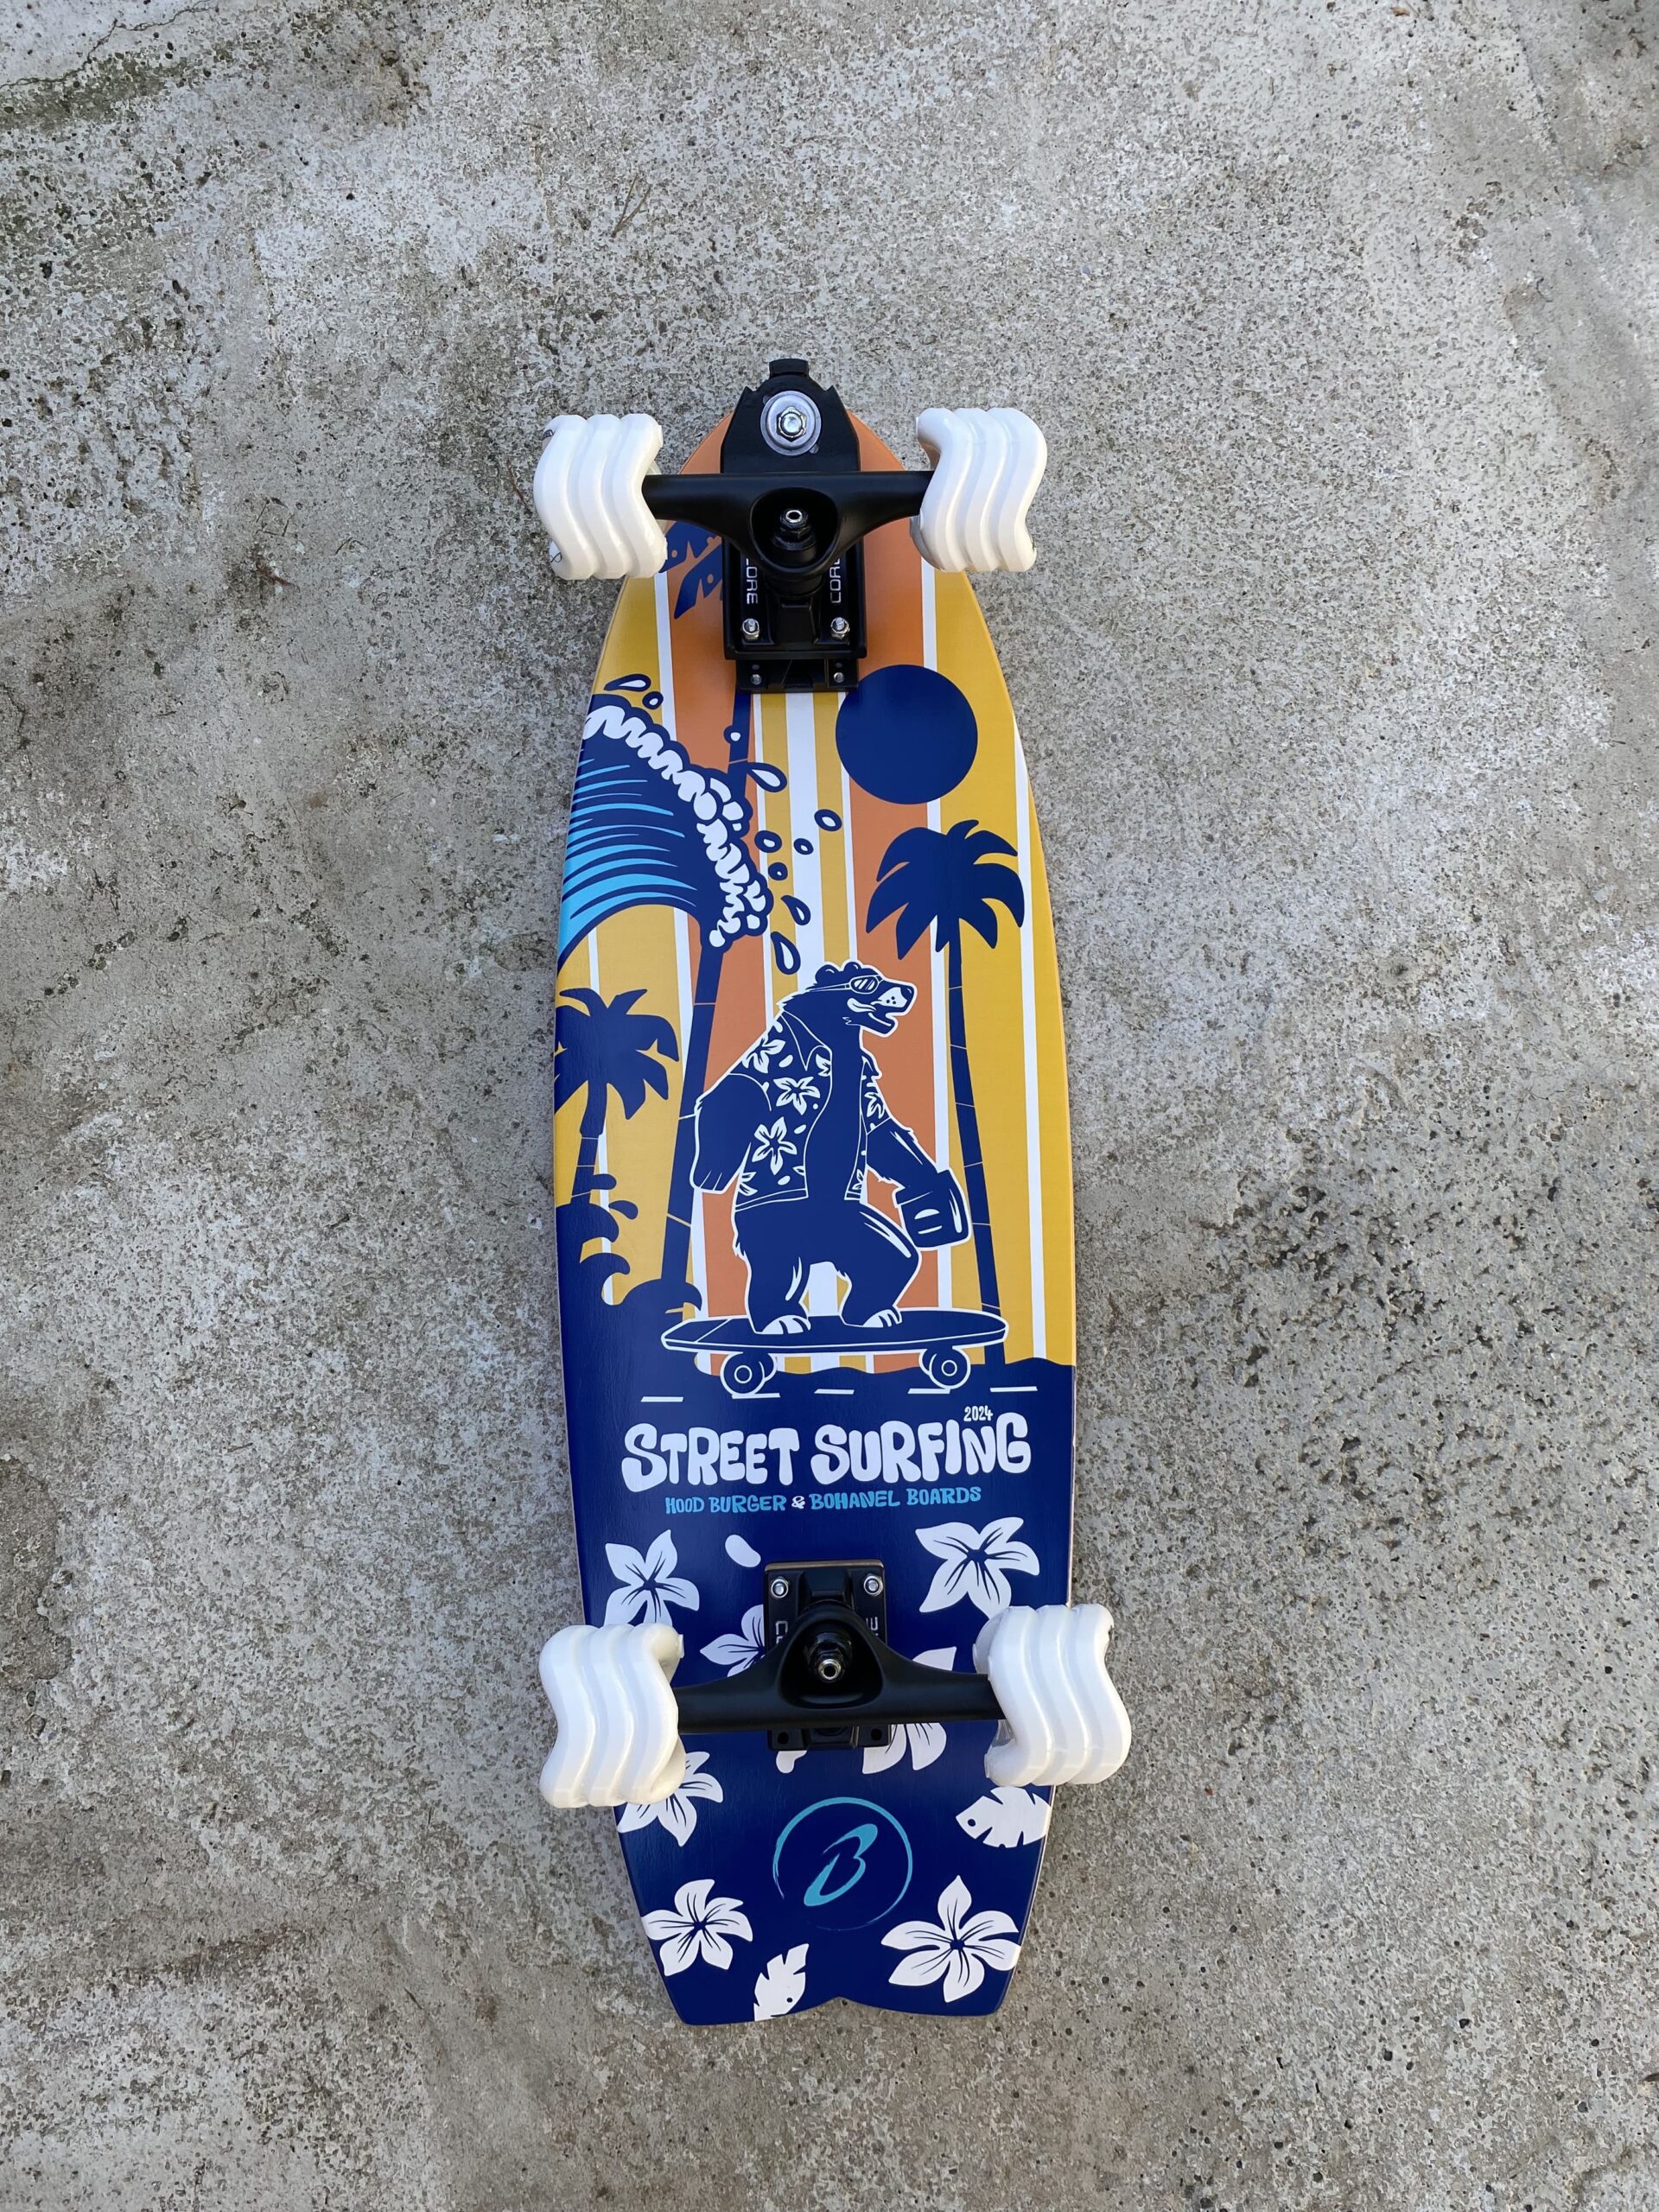 Hood Burger Street Surfing board with shark wheels